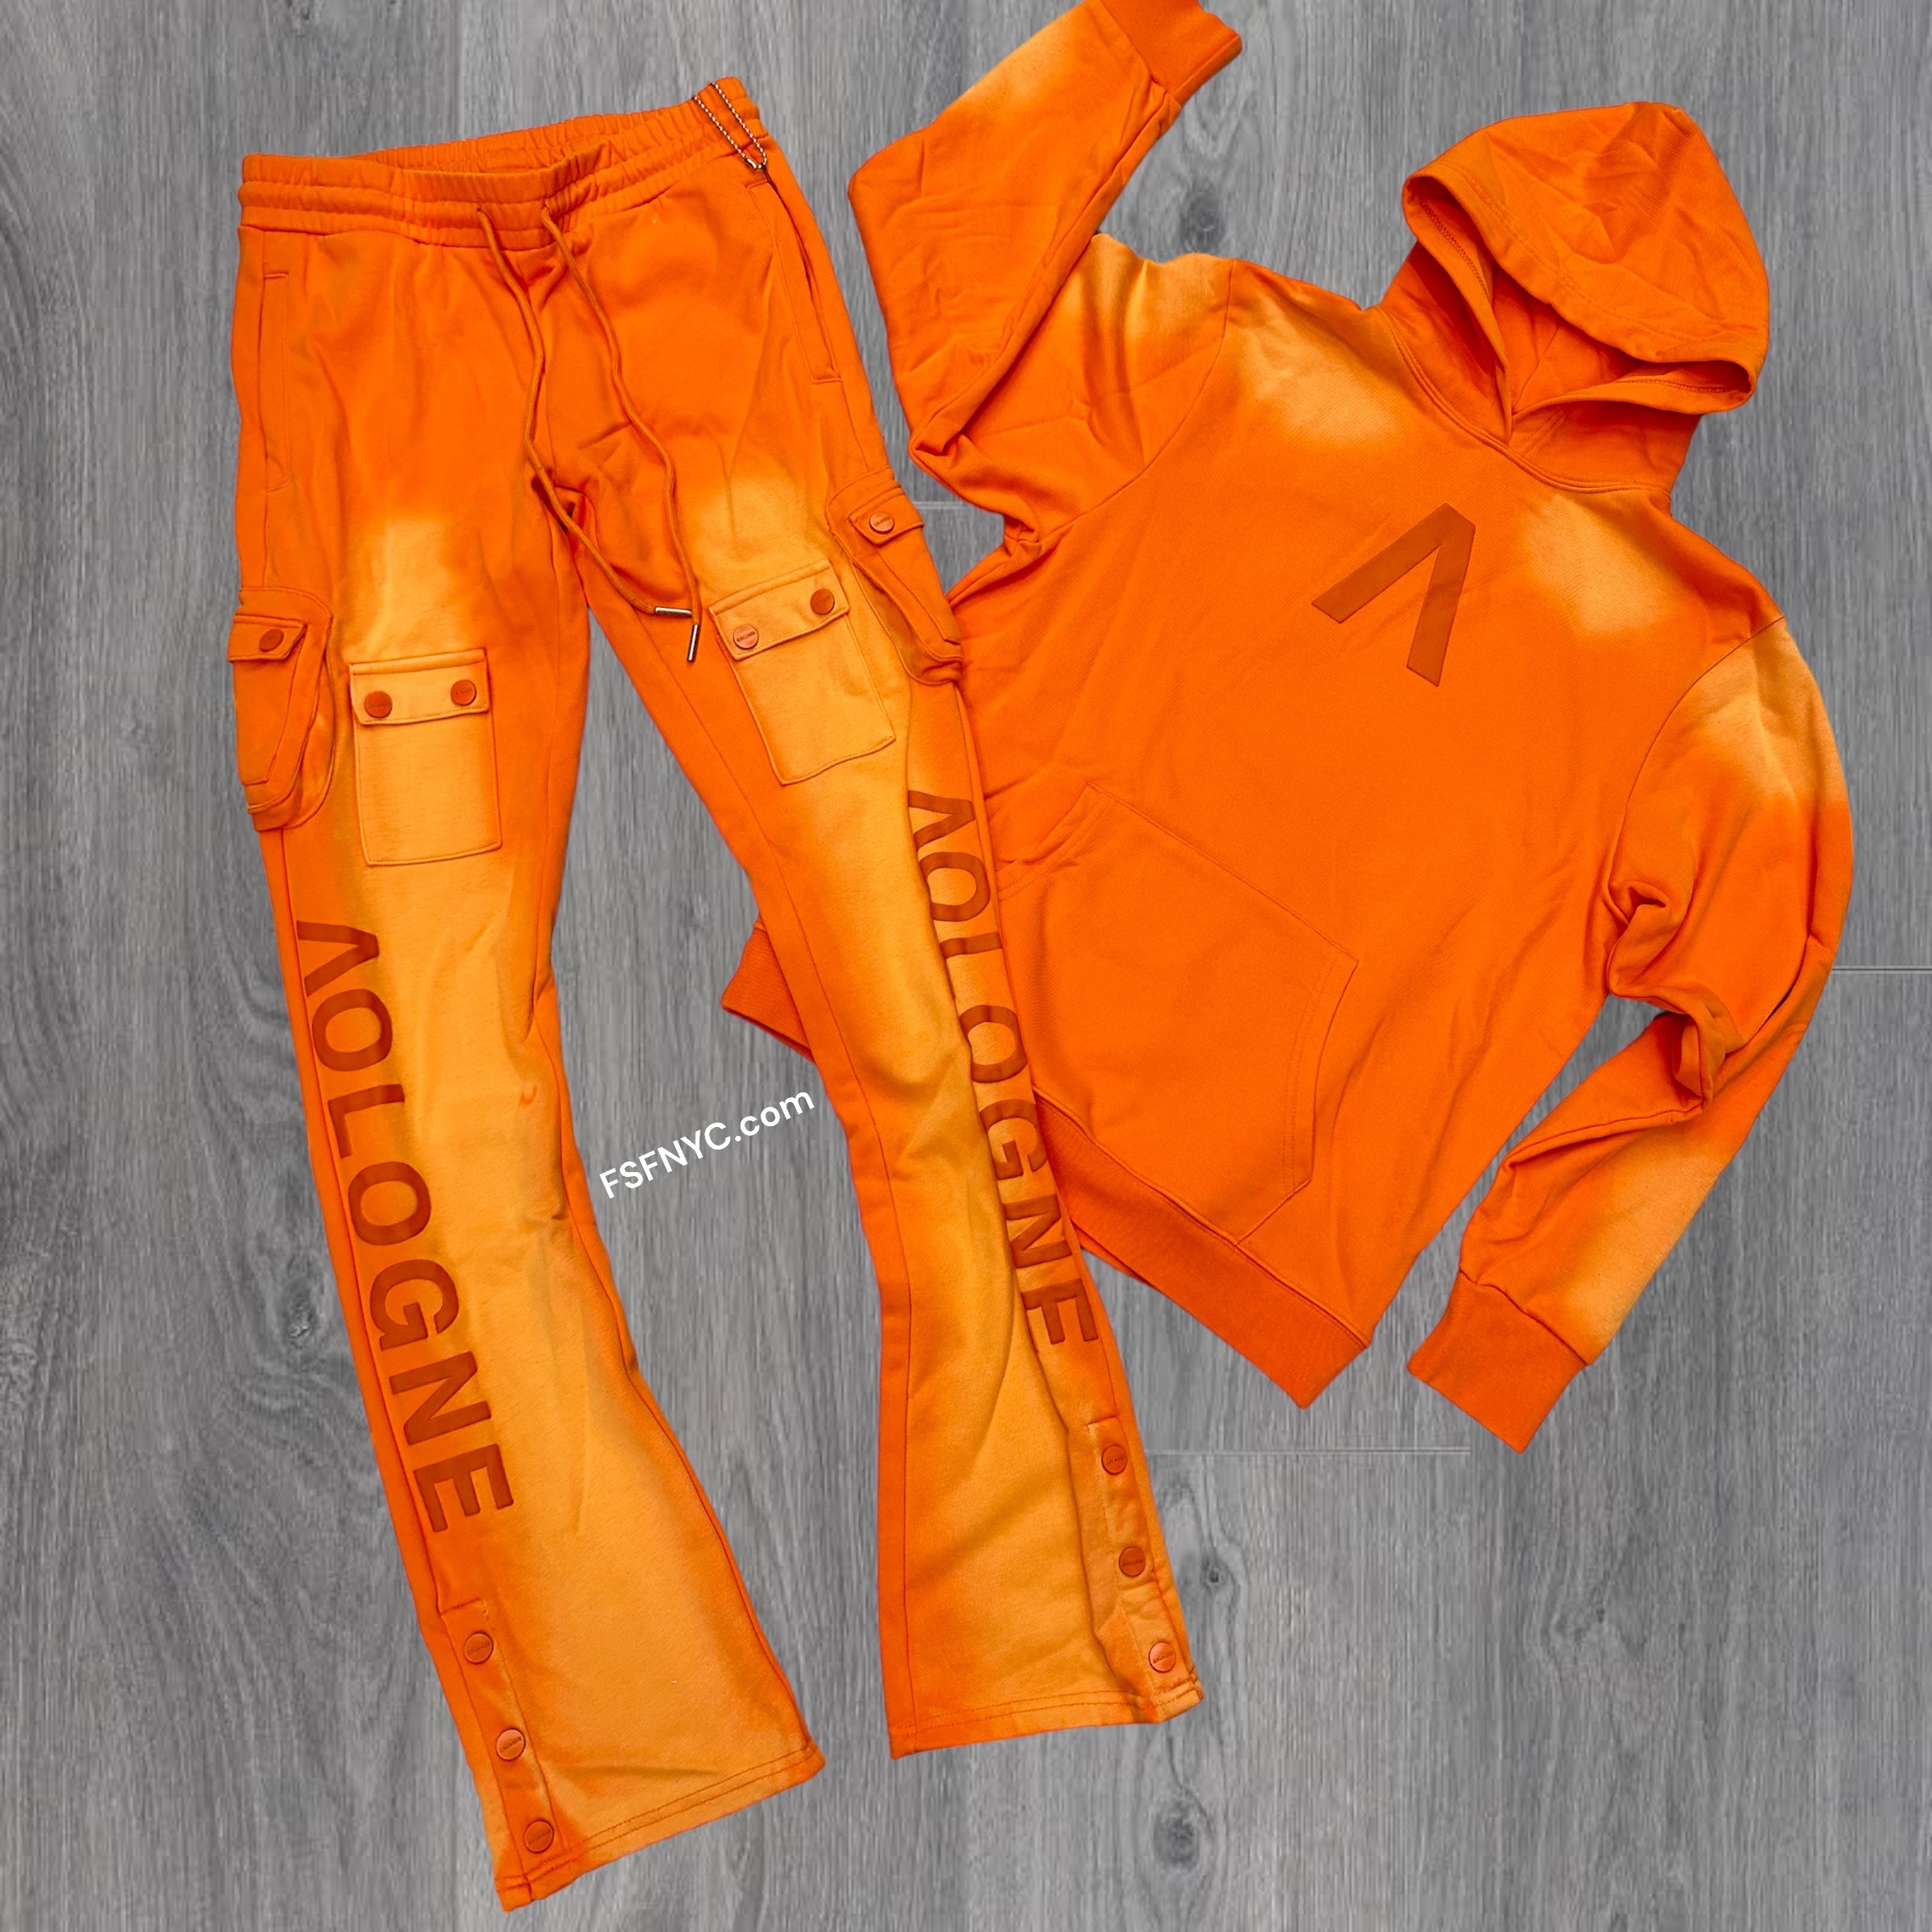 Aologne Acid Wash Sweat Suit Orange